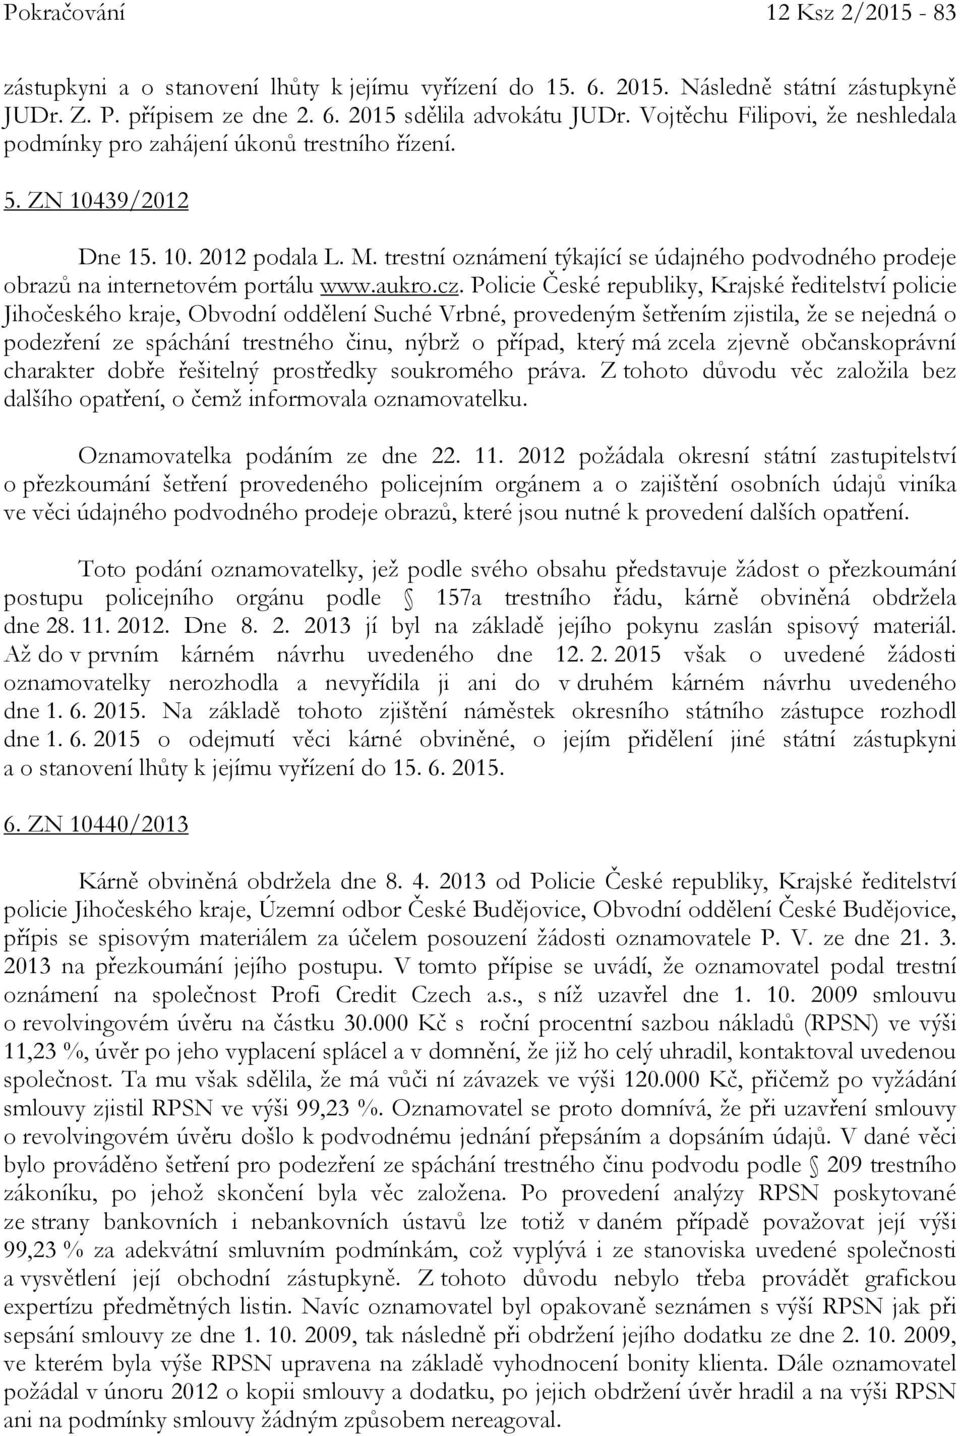 trestní oznámení týkající se údajného podvodného prodeje obrazů na internetovém portálu www.aukro.cz.